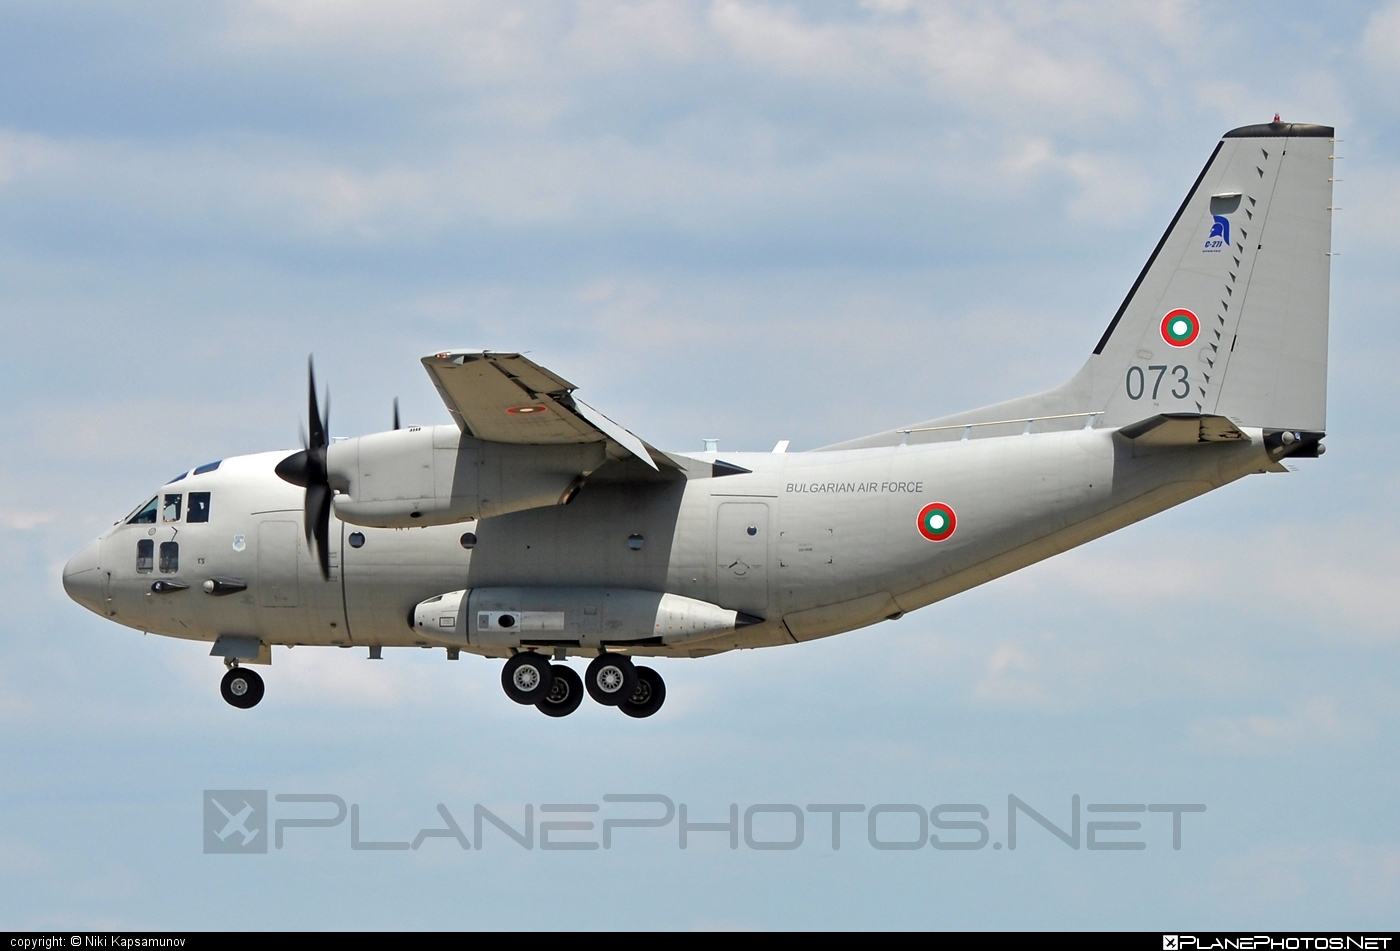 Alenia C-27J Spartan - 073 operated by Blgarski voyennovzdushni sili (Bulgarian Air Force) #alenia #aleniac27j #aleniac27jspartan #aleniaspartan #c27j #c27jspartan #c27spartan